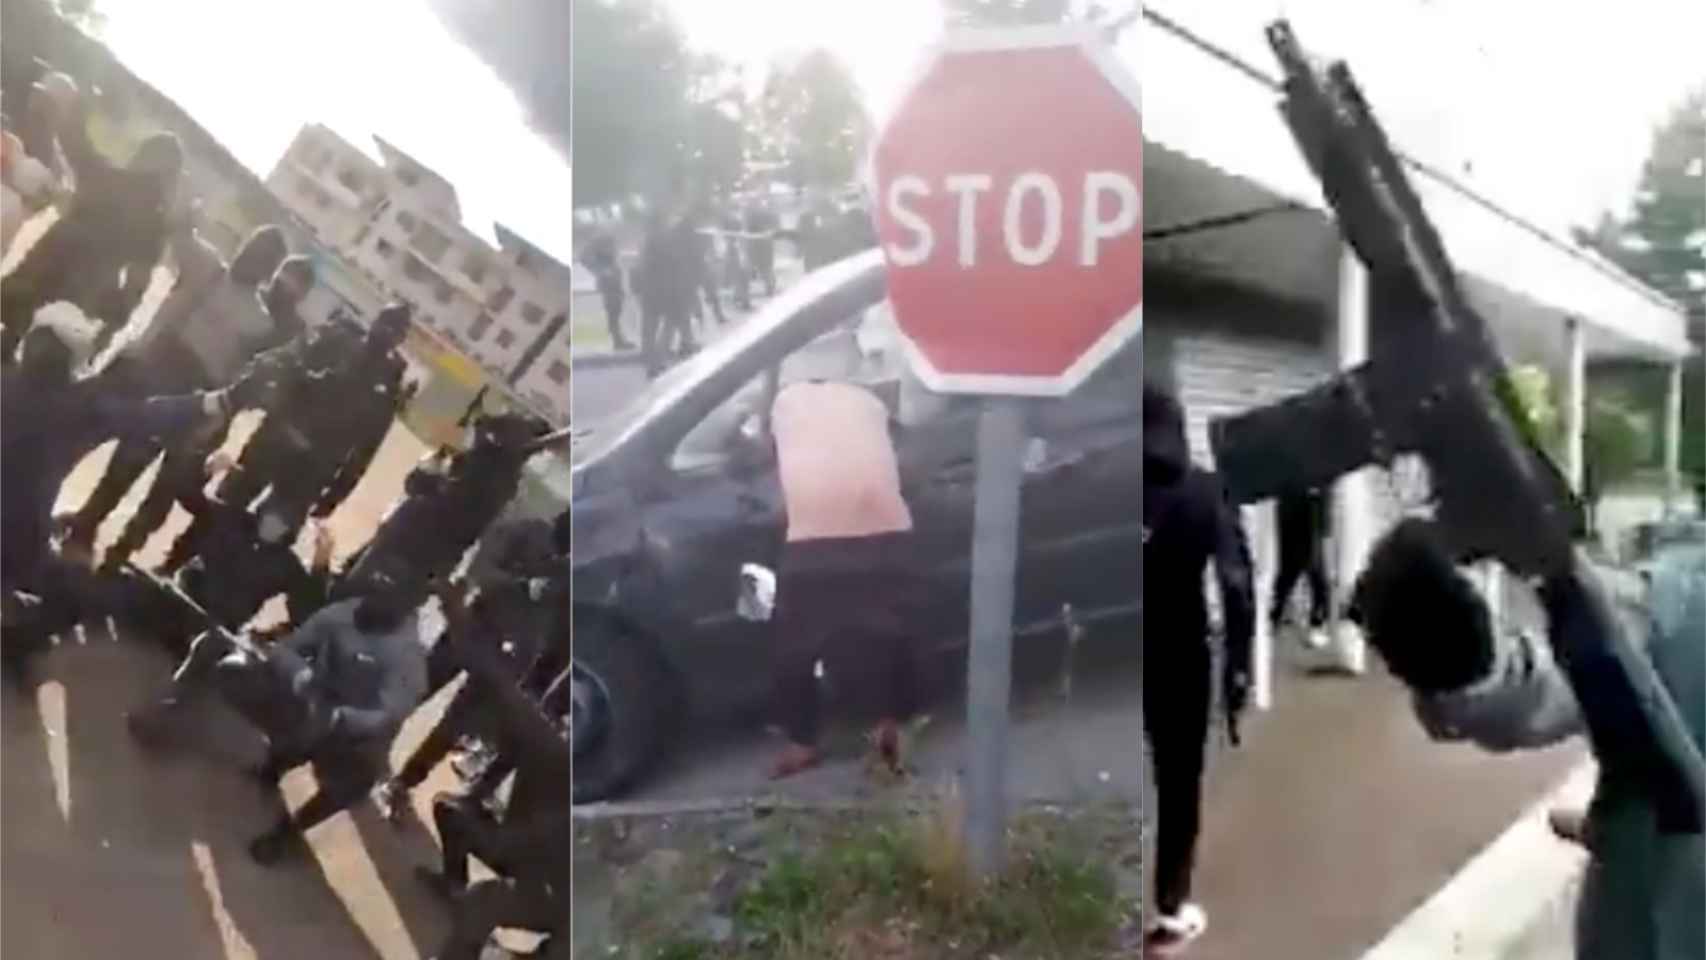 Los altercados se suceden sin control en las calles de Dijon